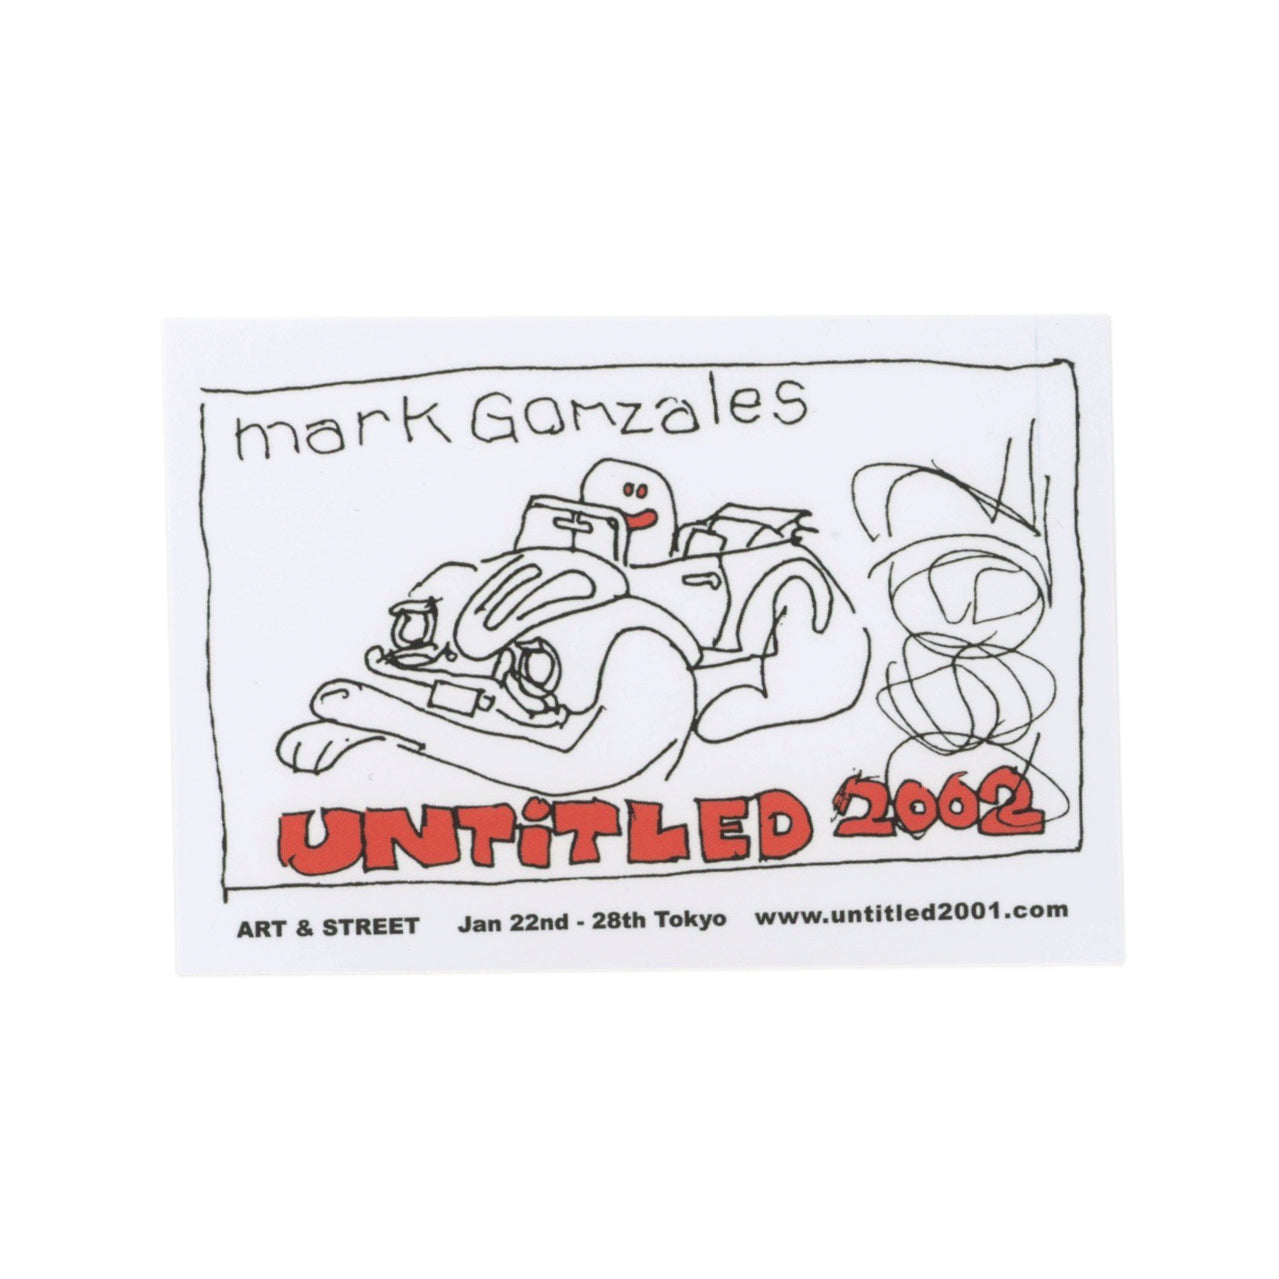 Mark Gonzales Untitled 2002 Sticker